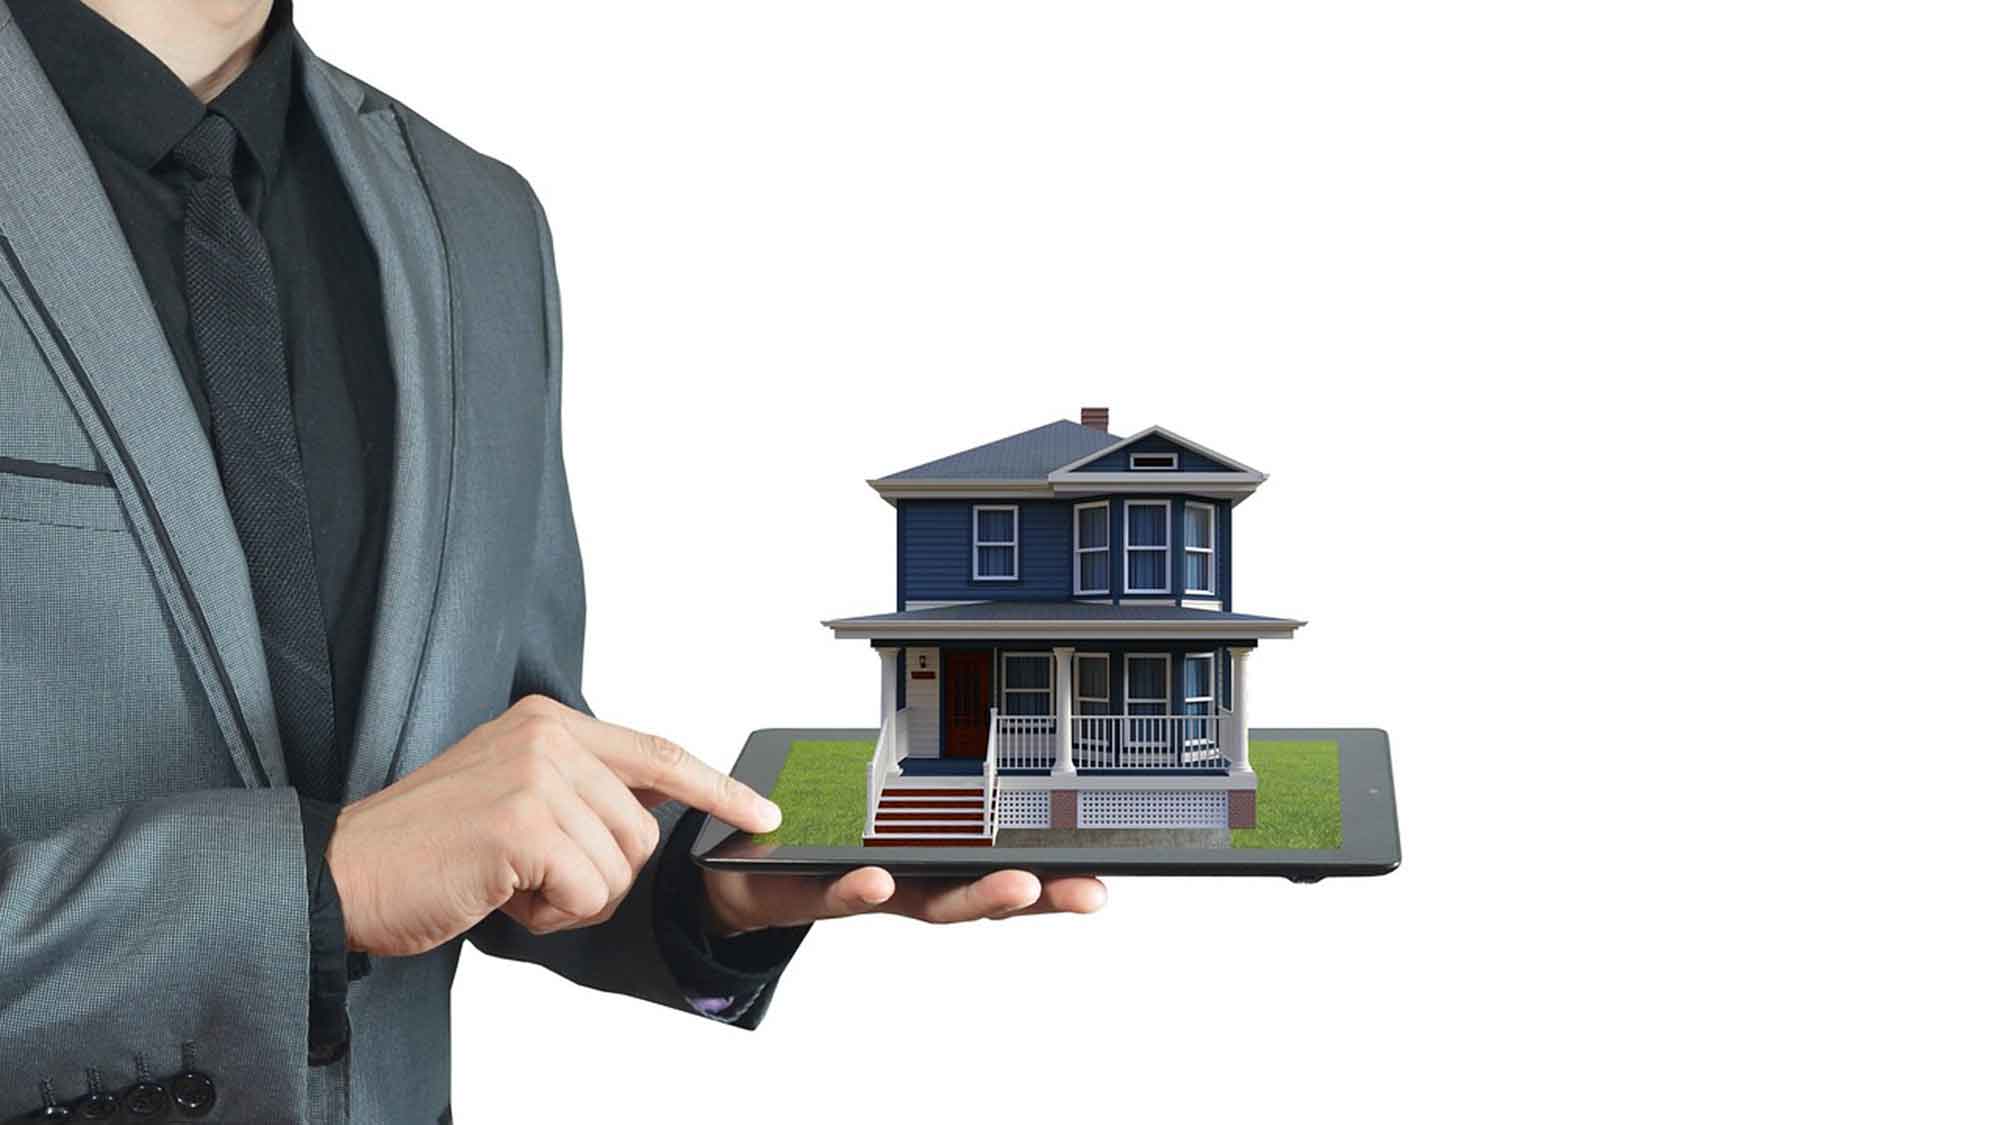 Immobilienverkauf – wichtige Details für die Maklersuche